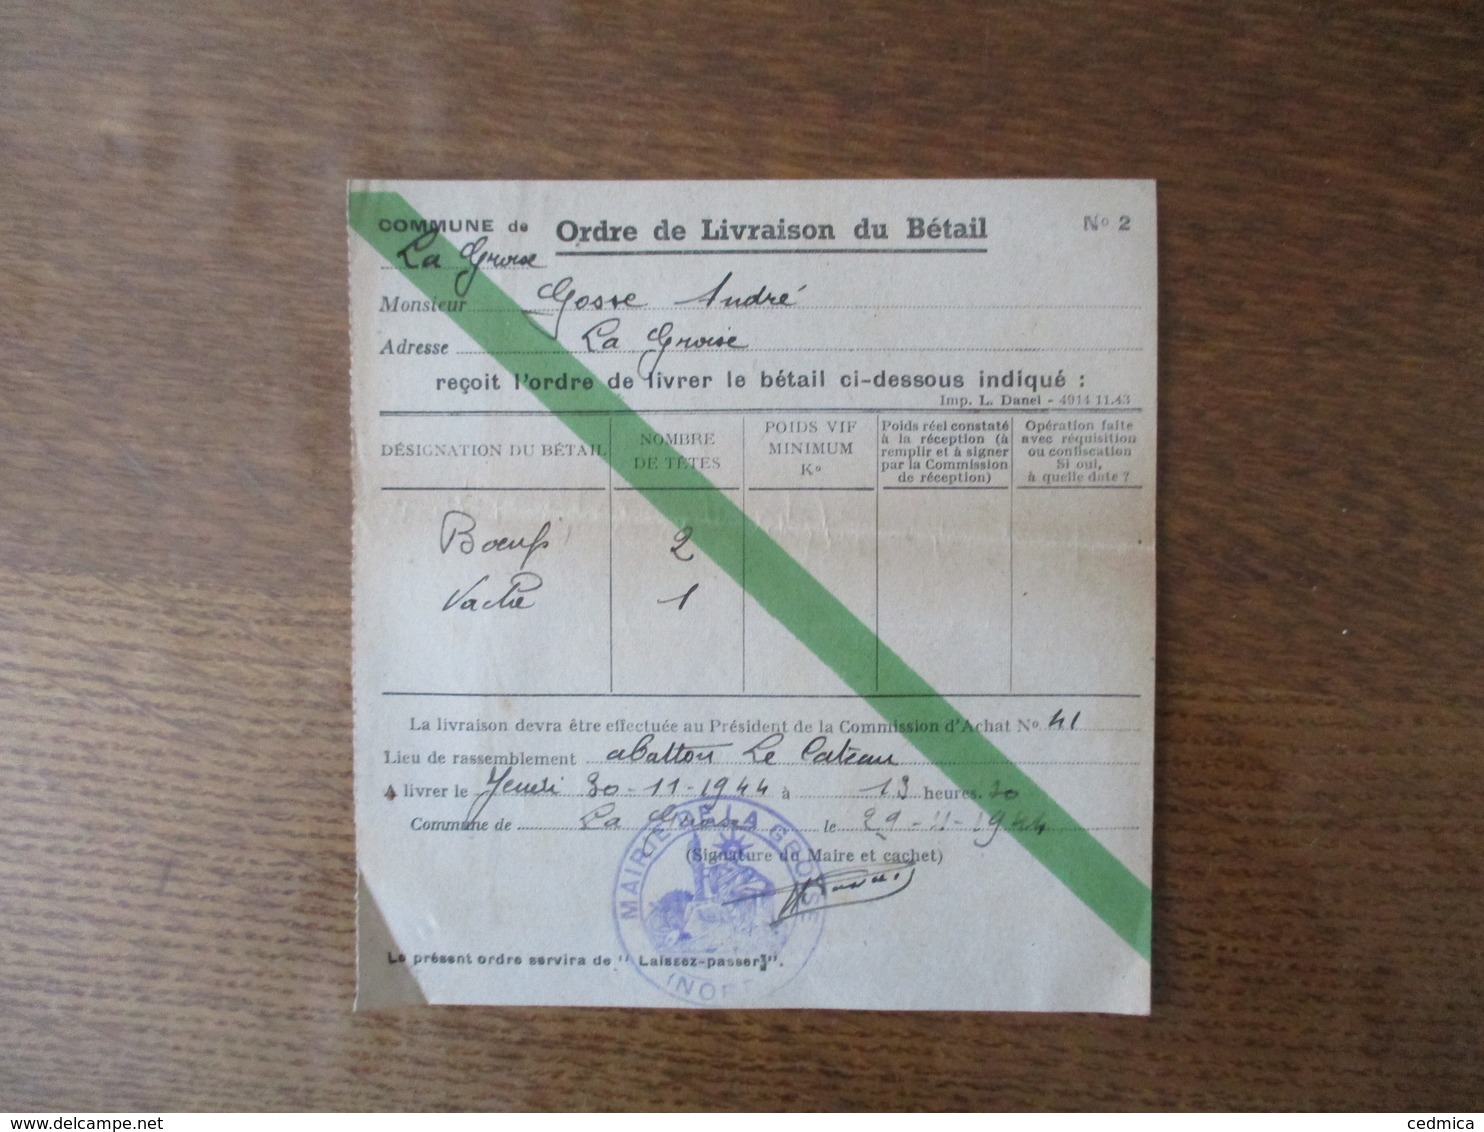 COMMUNE DE LA GROISE ORDRE DE LIVRAISON DU BETAIL N°2 DU 29-11-1944 LE MAIRE - Documents Historiques